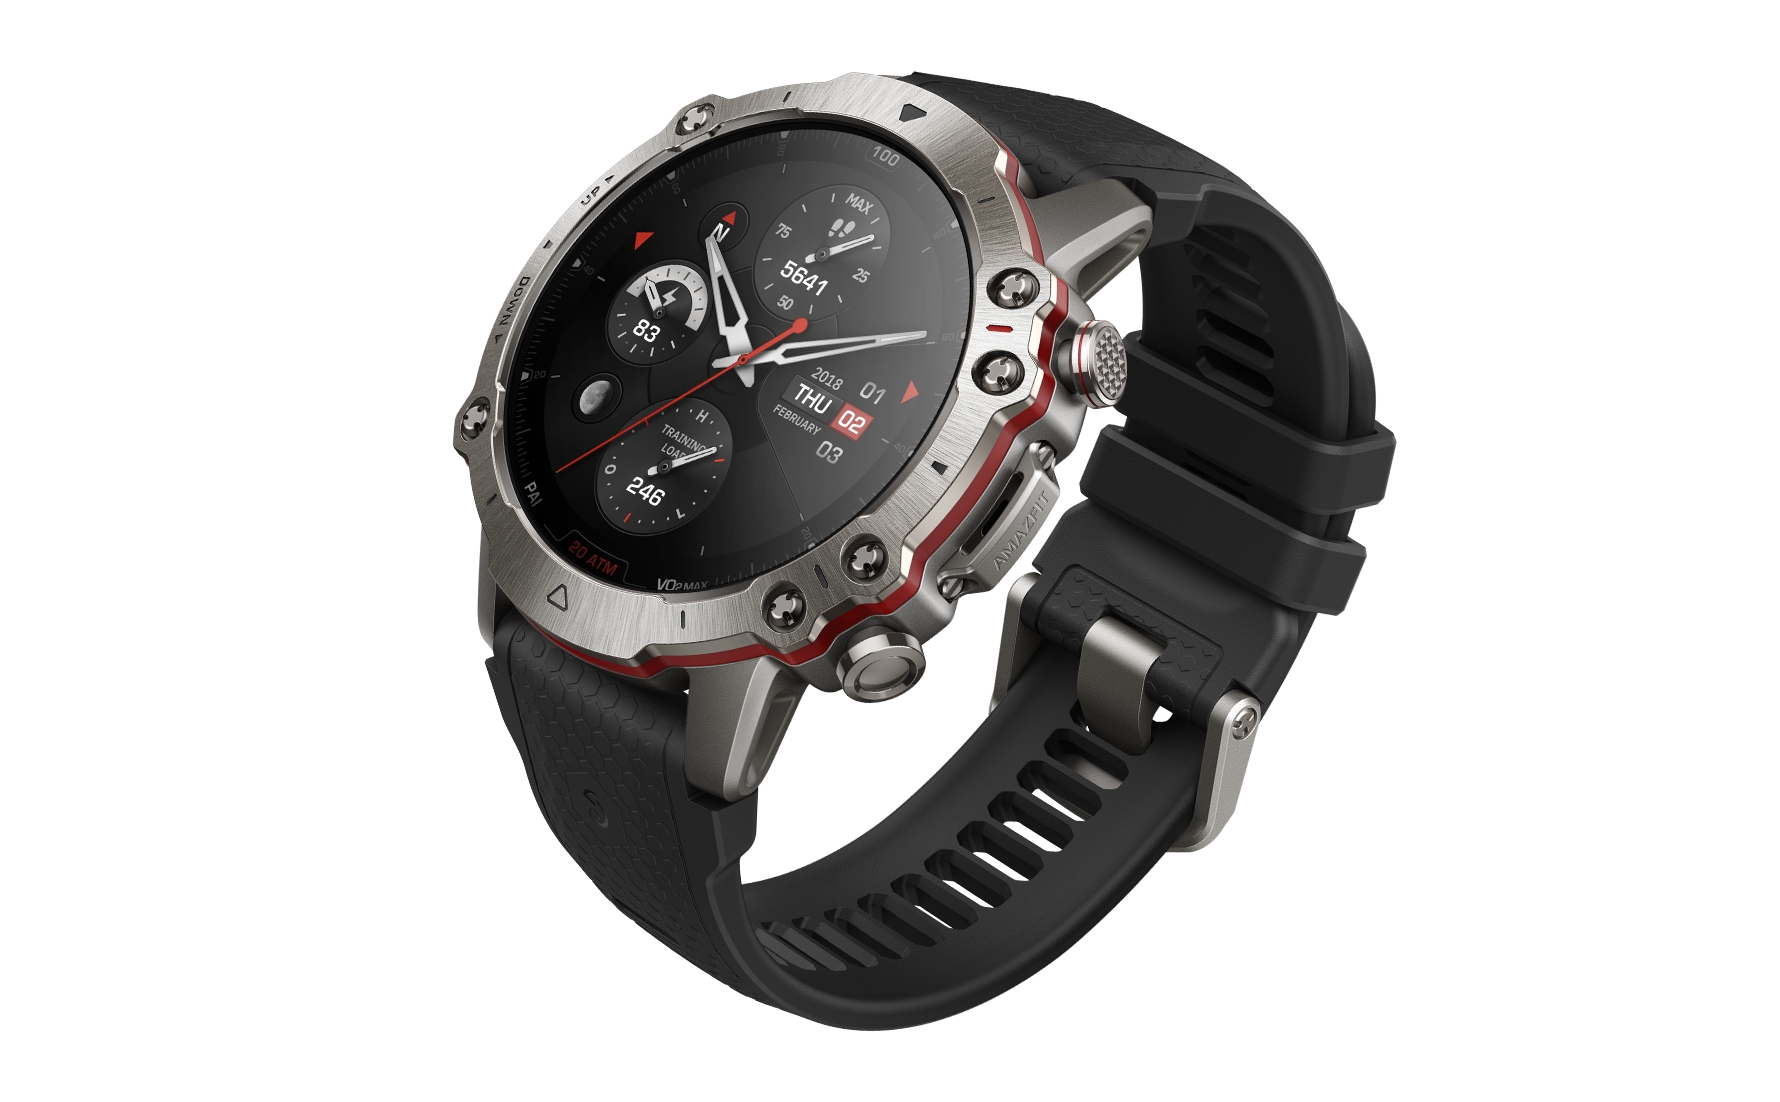 Amazfit ra mắt Falcon, đồng hồ GPS cao cấp nhất của hãng với phần cứng rất xịn và rất đẹp